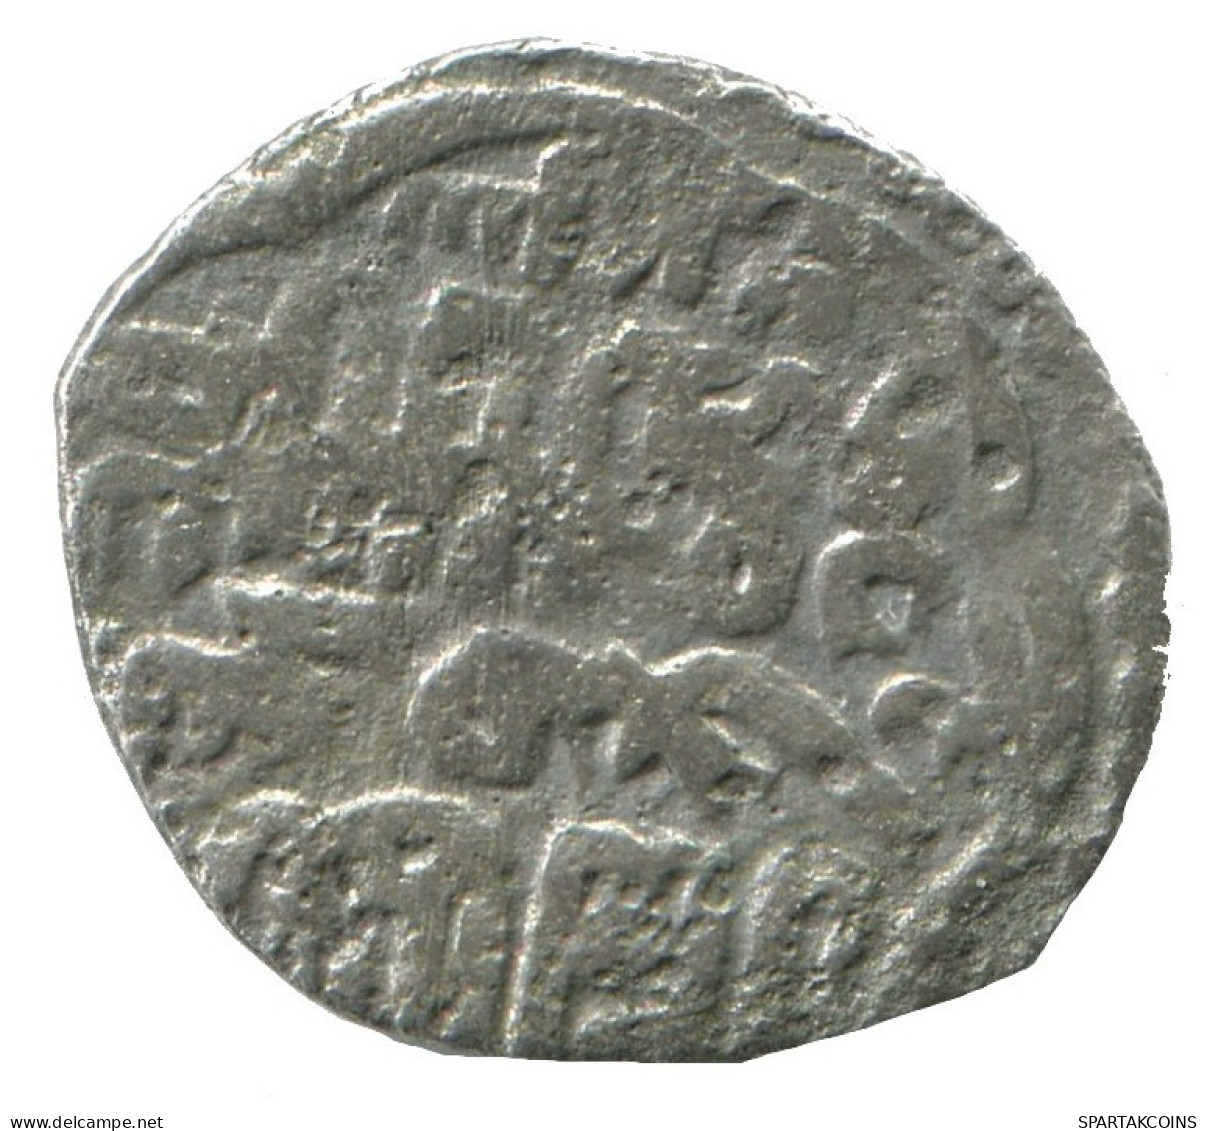 GOLDEN HORDE Silver Dirham Medieval Islamic Coin 1.1g/16mm #NNN2026.8.F.A - Islamitisch